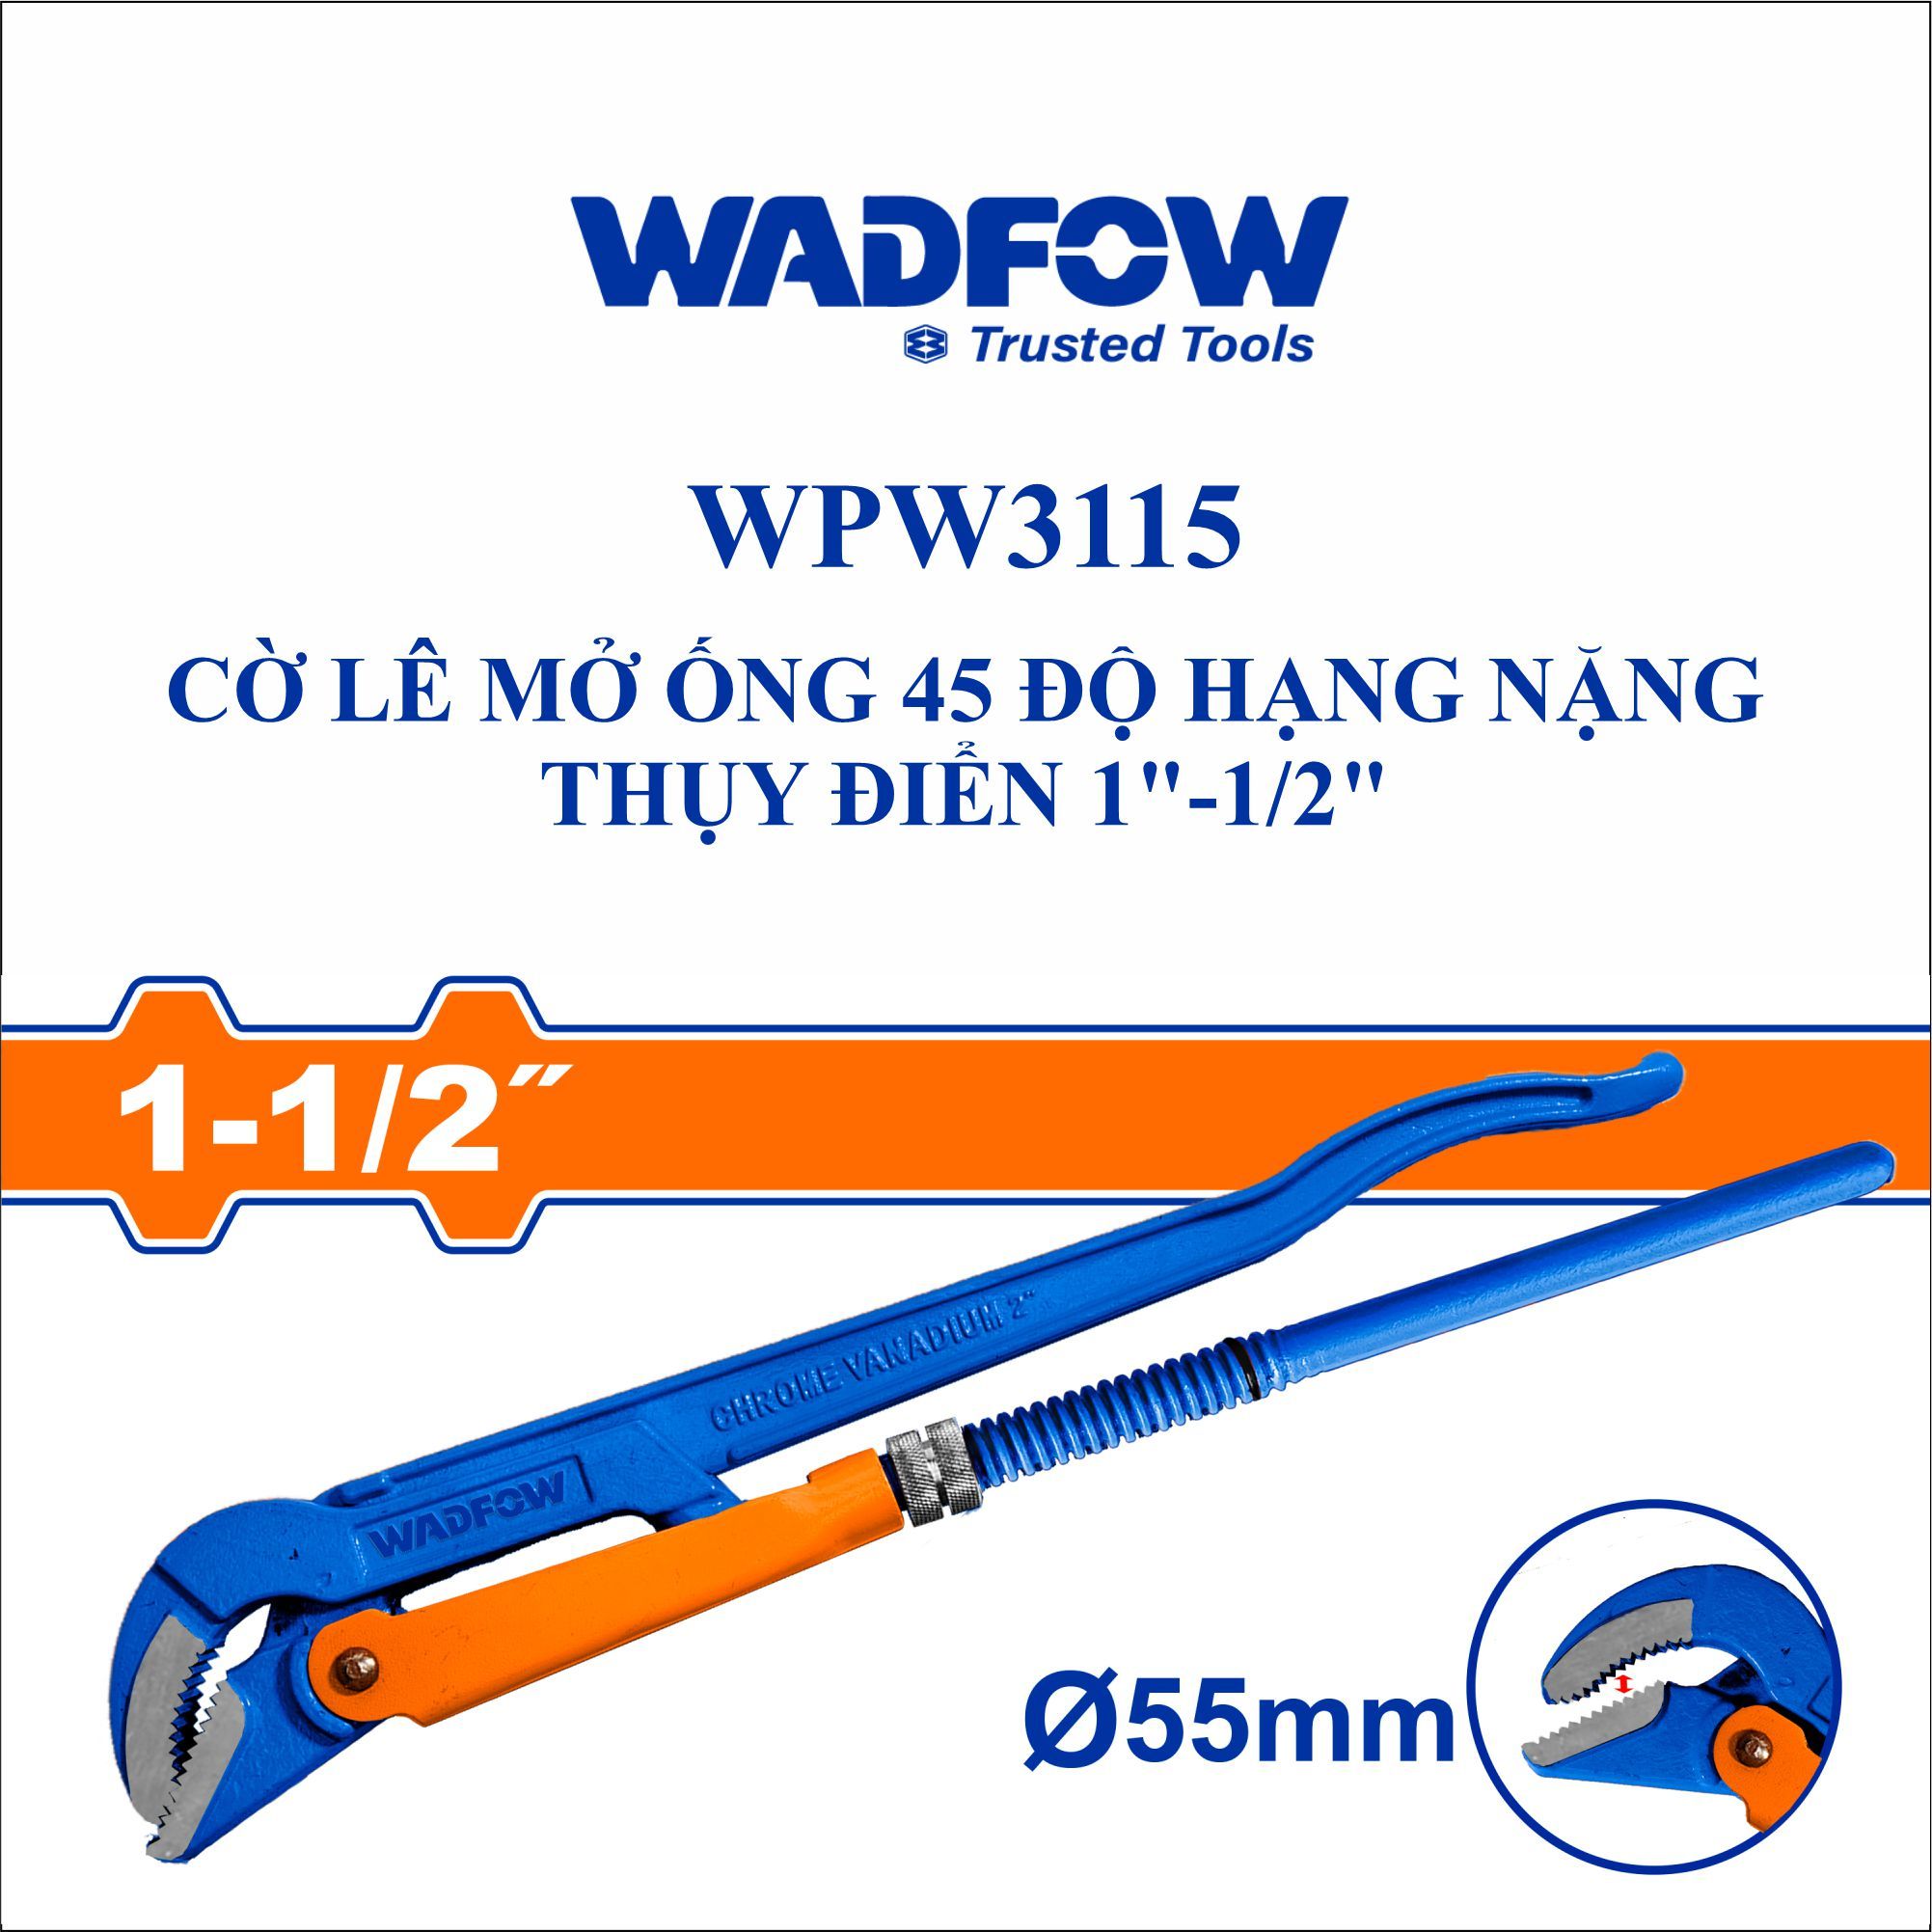  Cờ lê mở ống 45 độ hạng nặng Thụy Điển 1 Inch-1/2 Inch WADFOW WPW3115 